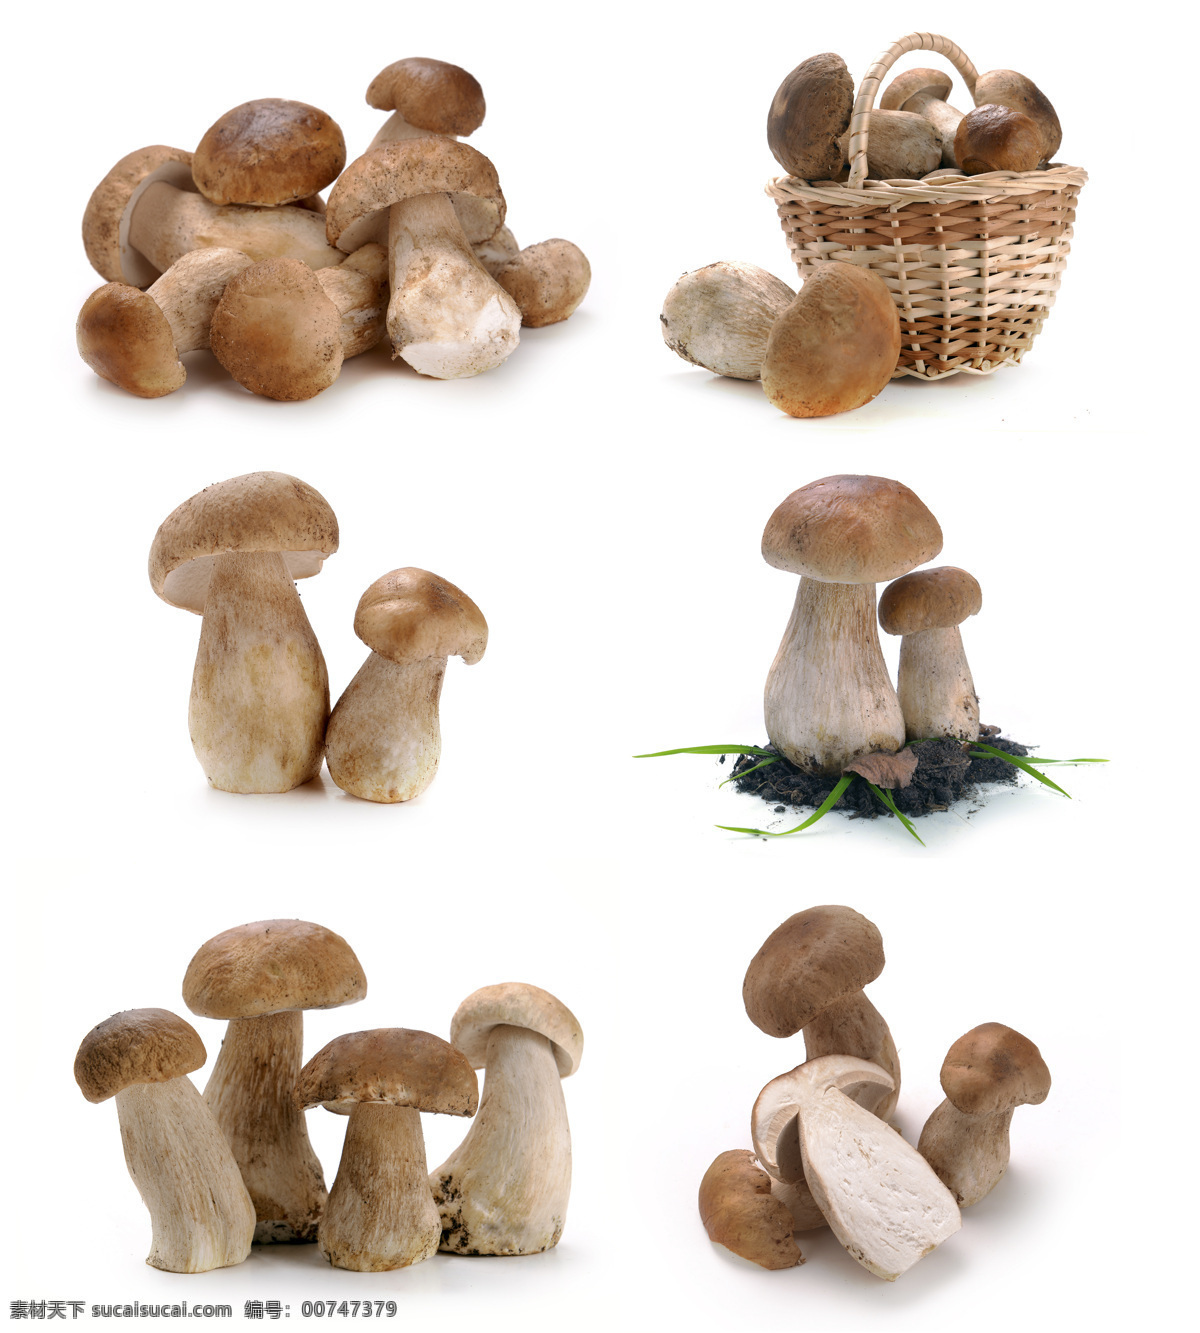 新鲜 蘑菇 新鲜蘑菇摄影 食物 蔬菜 餐厅美食 篮子里的蘑菇 香菇 蘑菇图片 餐饮美食